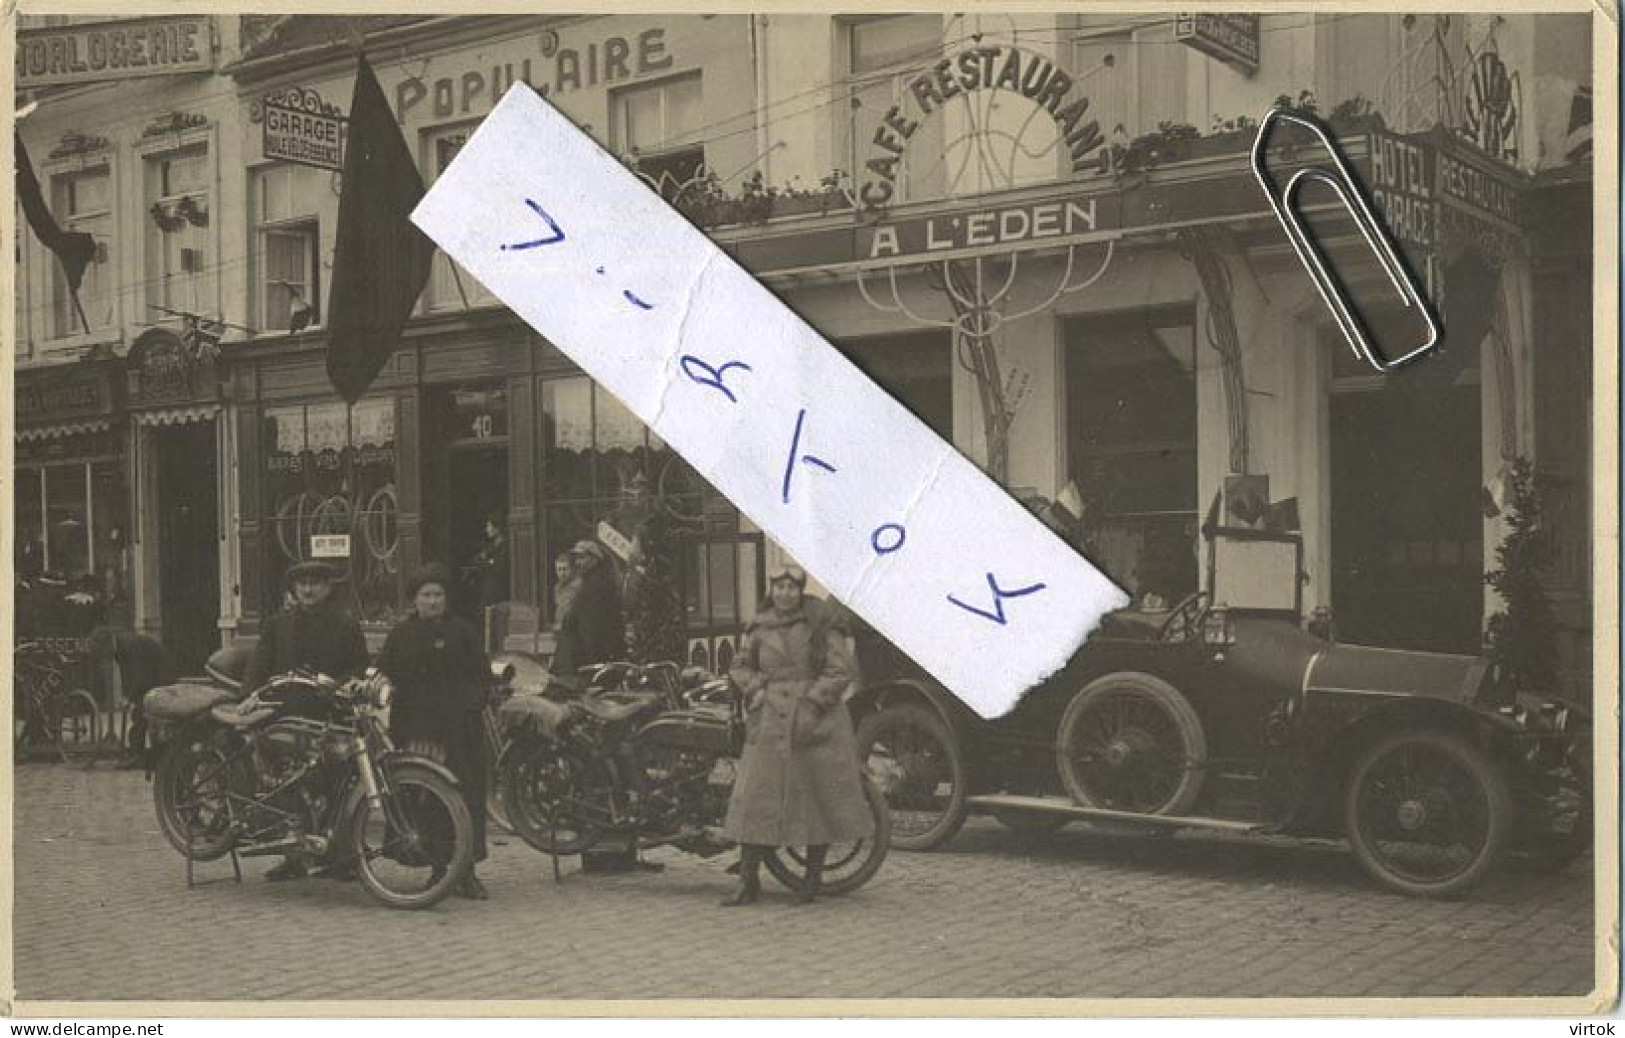 Wavre : Café-Restaurant A L'EDEN : Place Du Sablon 41-42 ( Carte Photo ):  Old Car & Moto's ( Garage Populaire - Velos ) - Waver